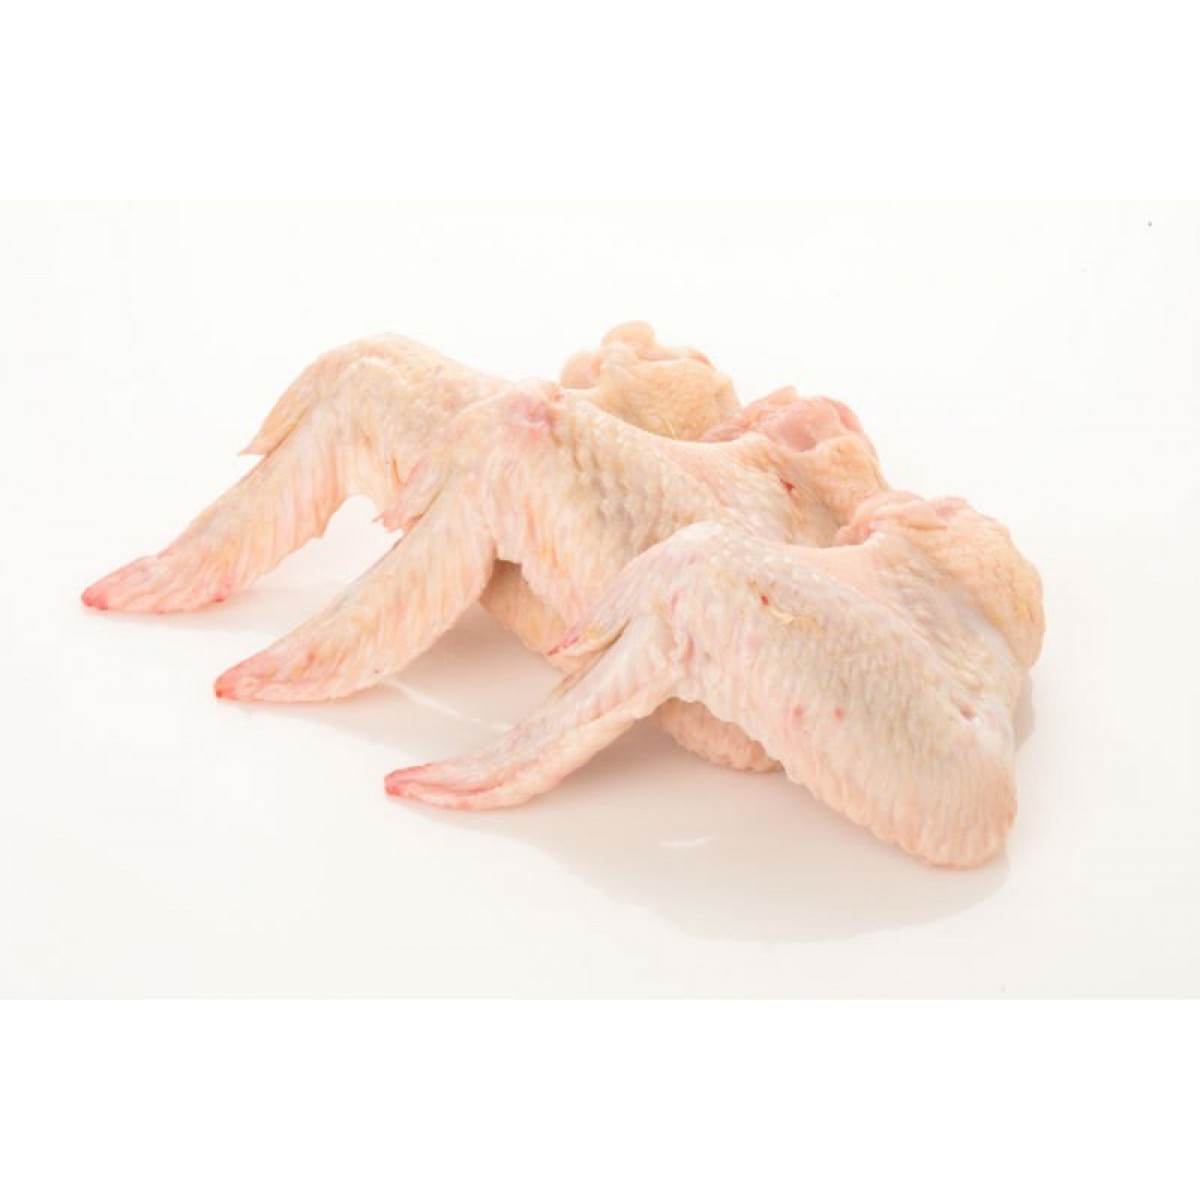 Alas de pollo (envasadas al vacío) | Hurtado e Hijos